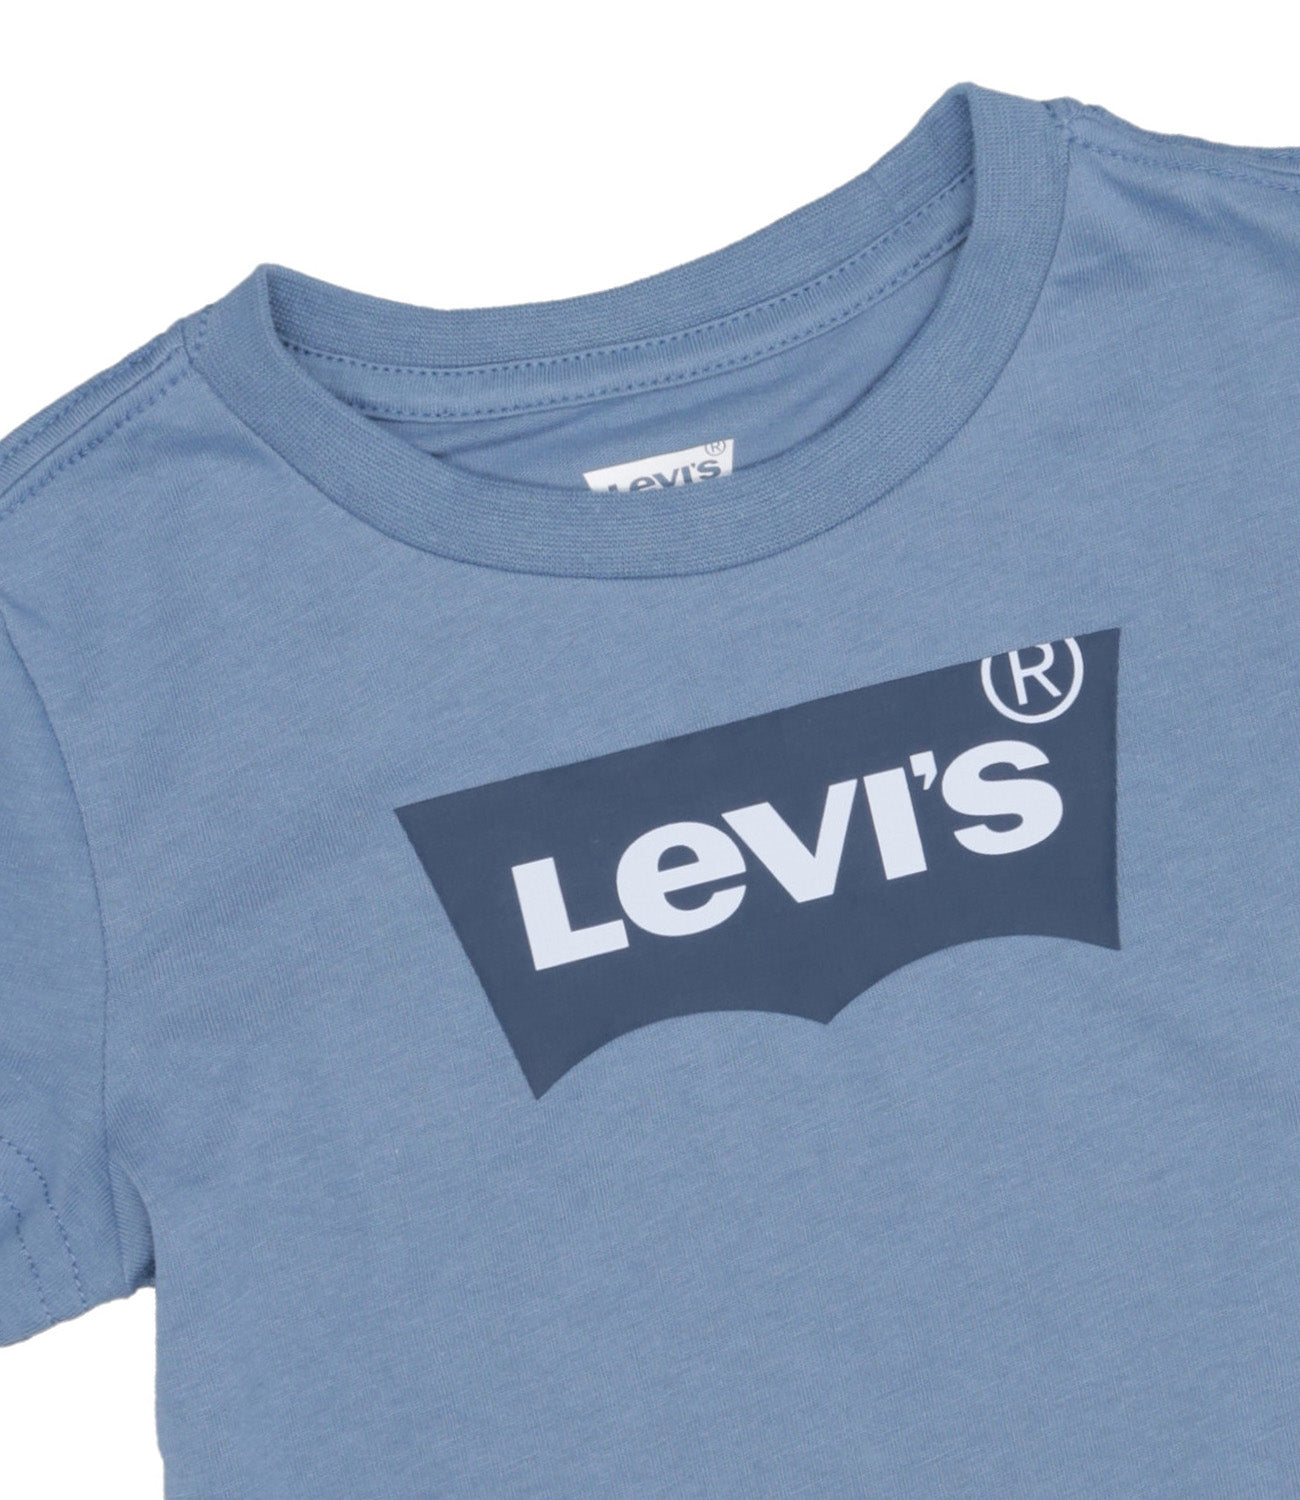 Levis Kids | T-Shirt Light Blue